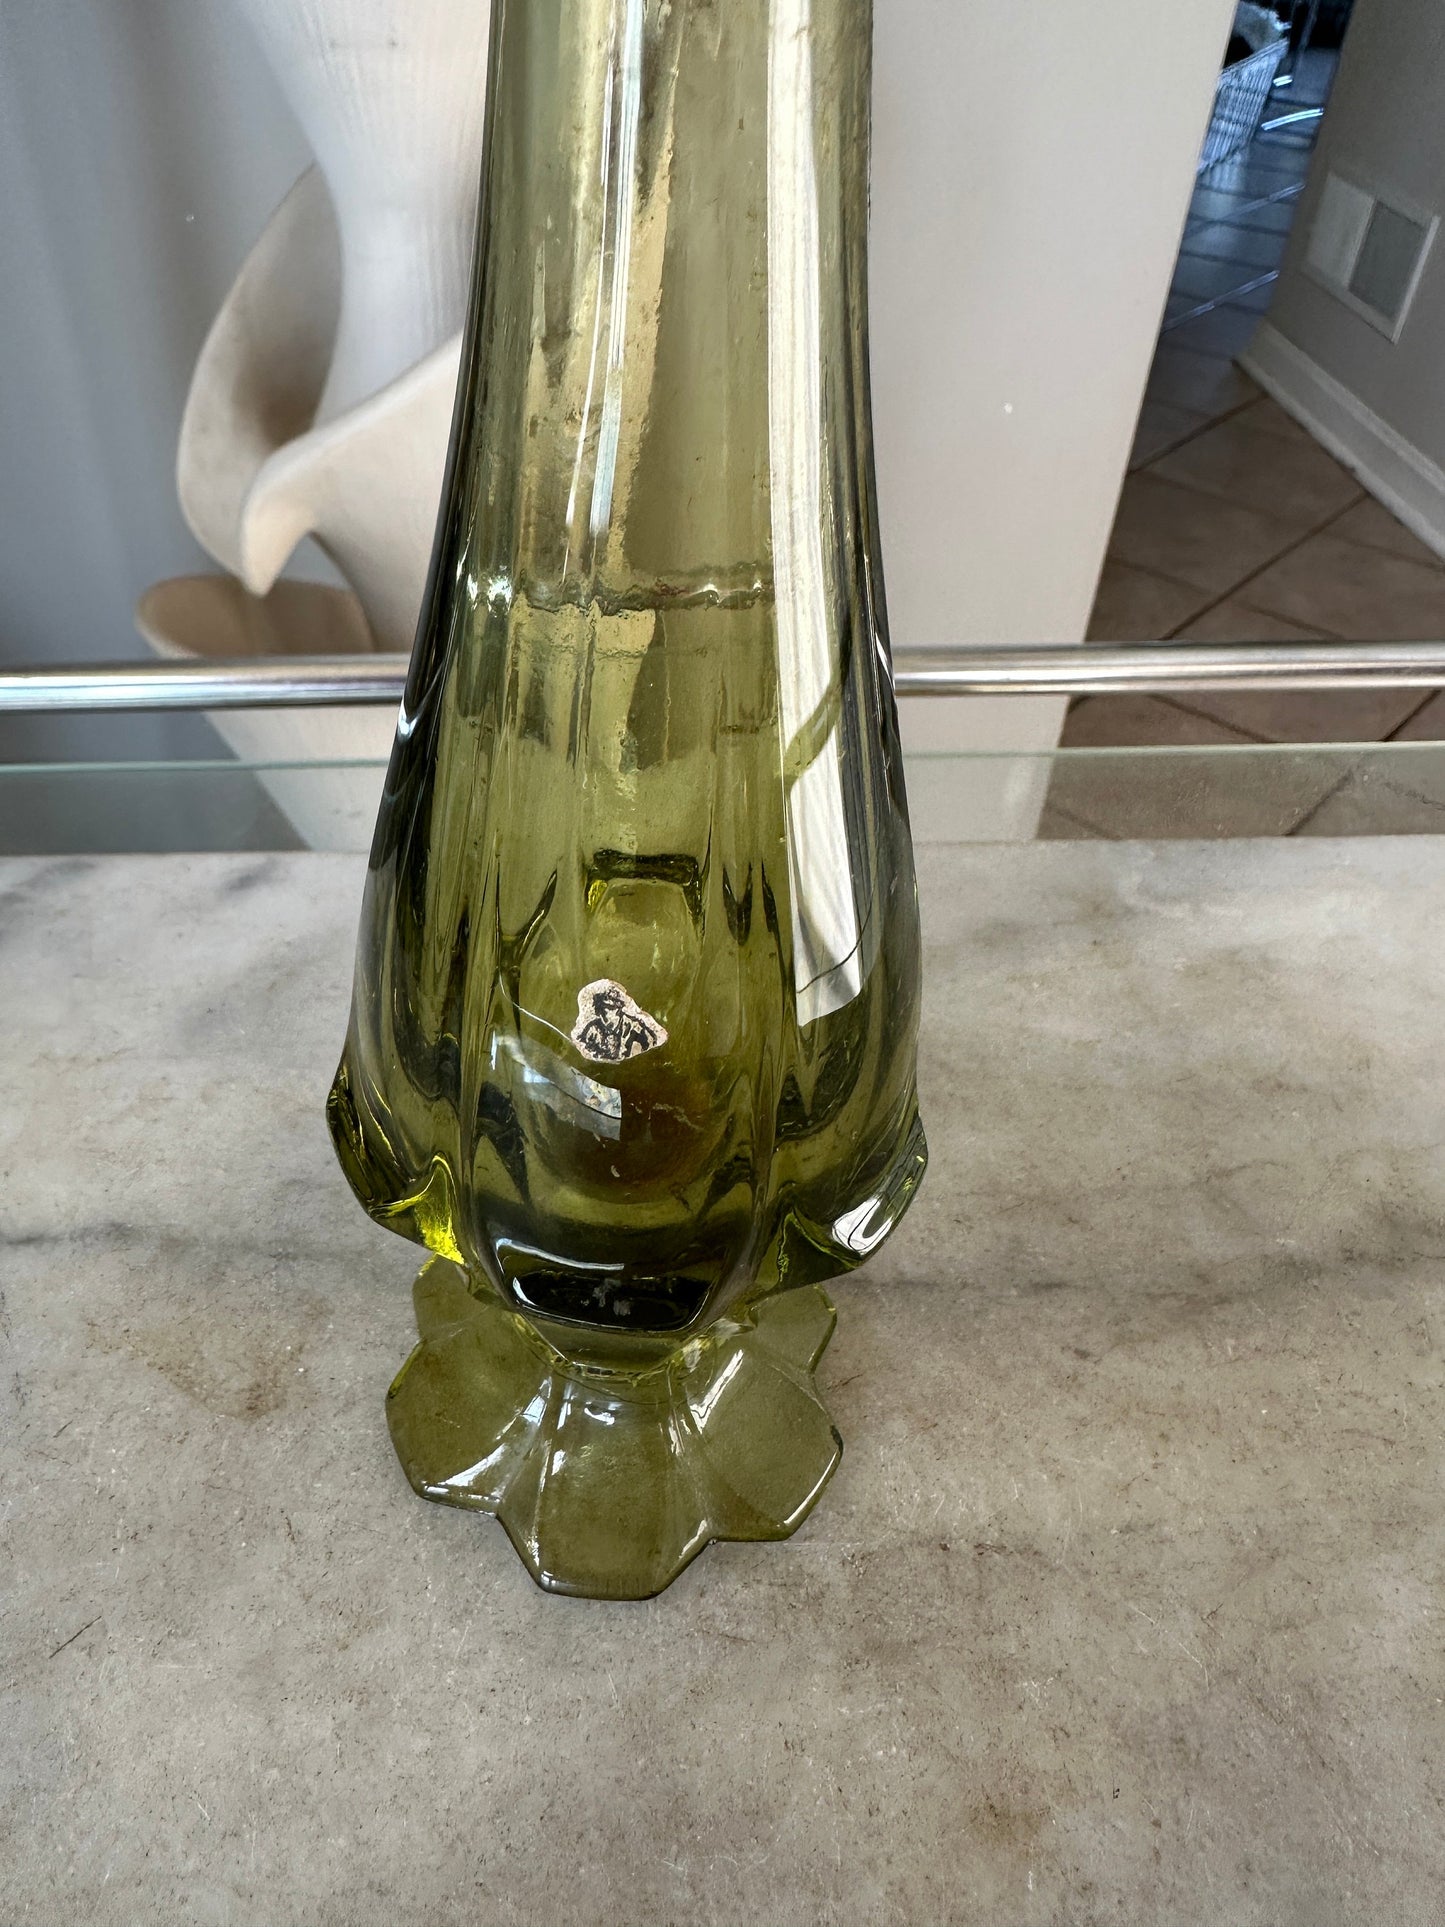 Fenton Valencia 12" Swung Glass Vase in Colonial (Avocado) Green| Fenton Six Petal Vase